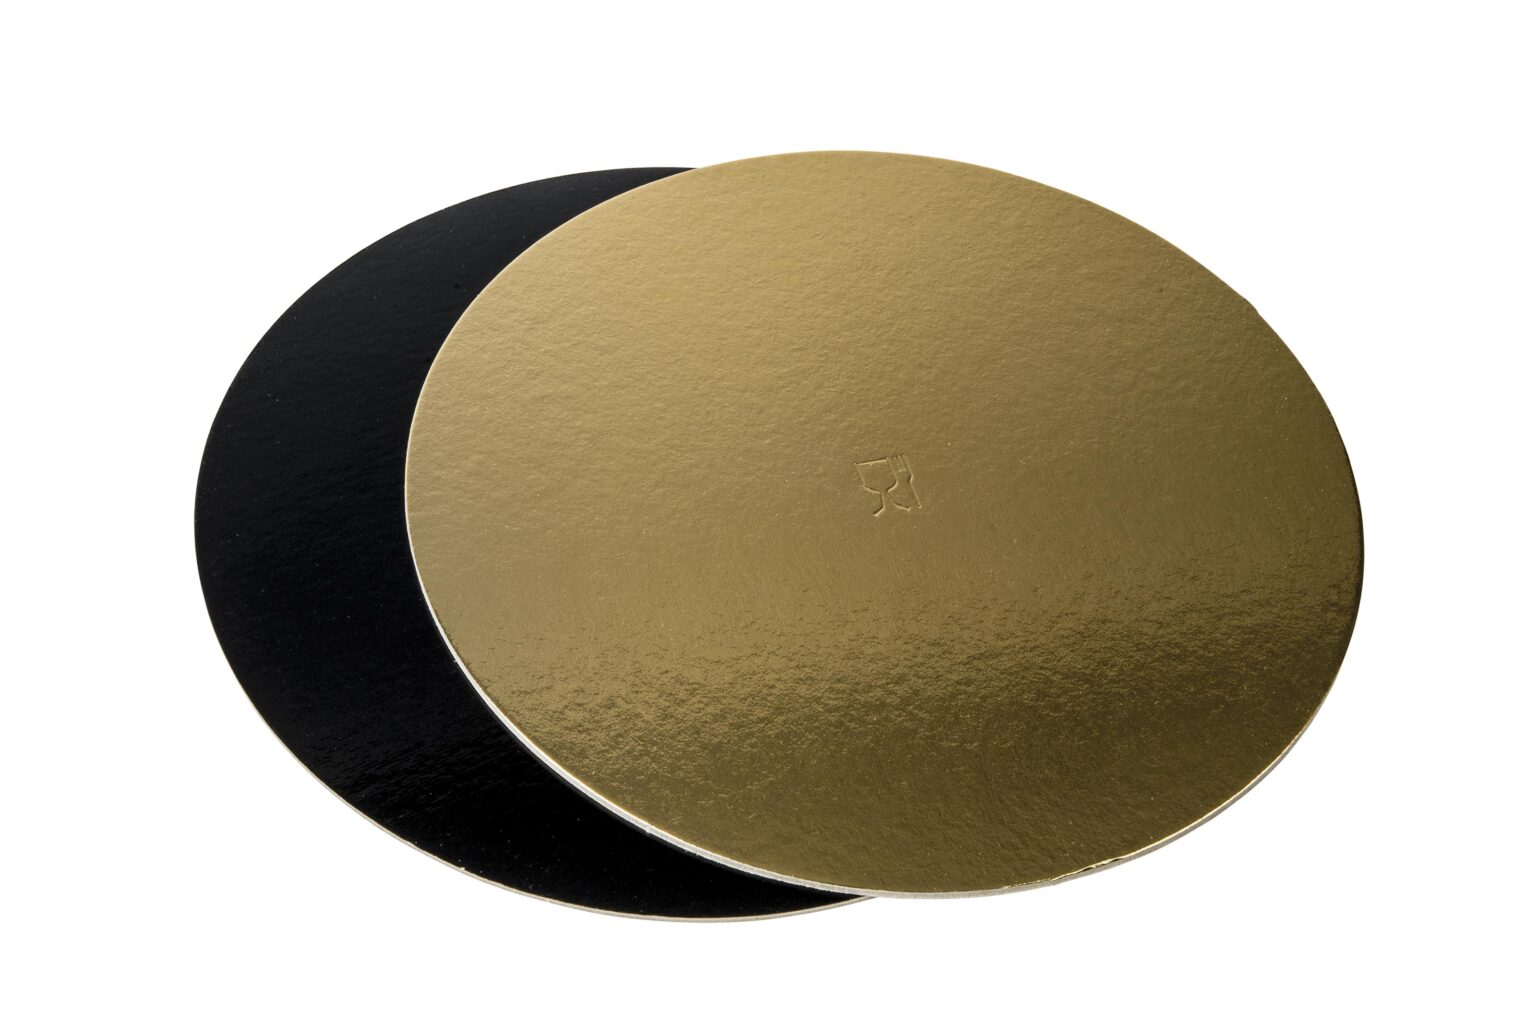 Discuri groase auriu/negru - Discuri groase auriu/negru 2400 gr OE46cm -10 buc/set